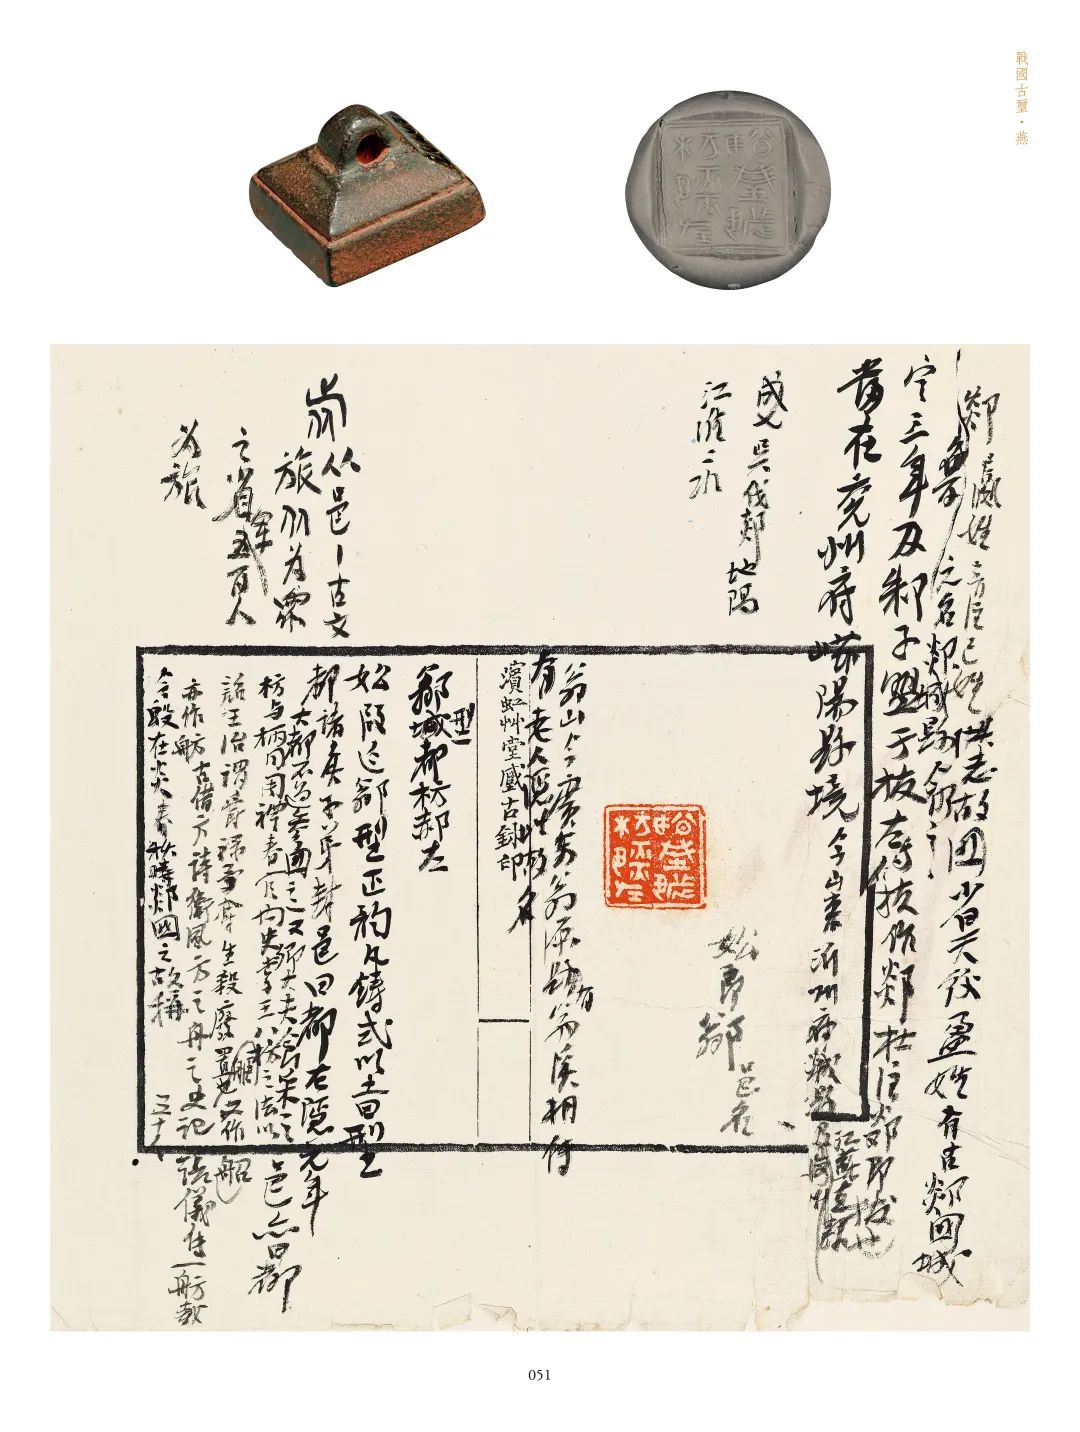 国内最具学术与艺术价值的玺印收藏集合体之一《古物影——黄宾虹古玺印收藏集萃》(图149)